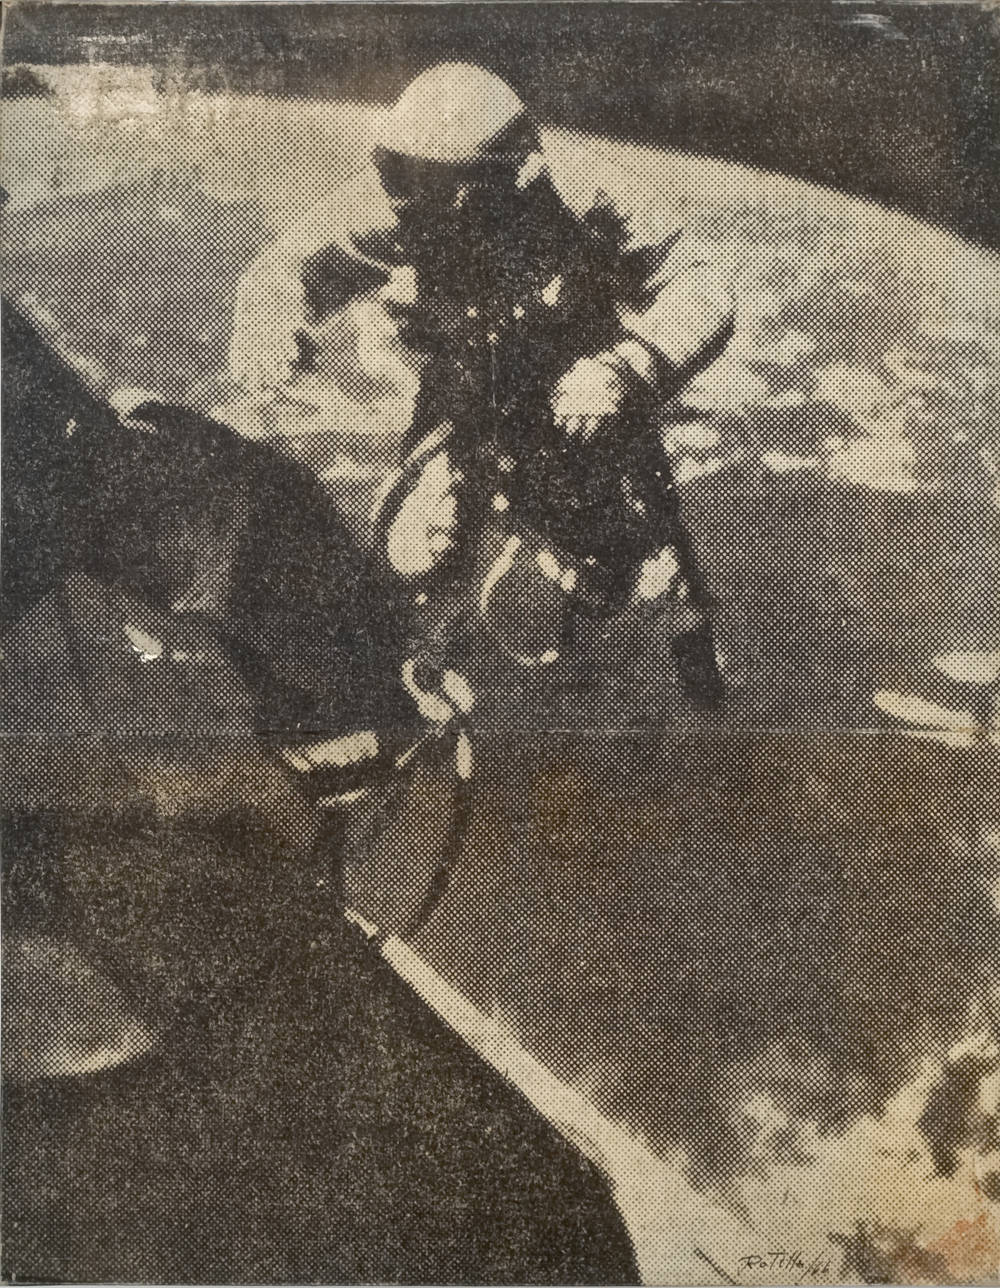 Mimmo Rotella, L'astronaute, 1966